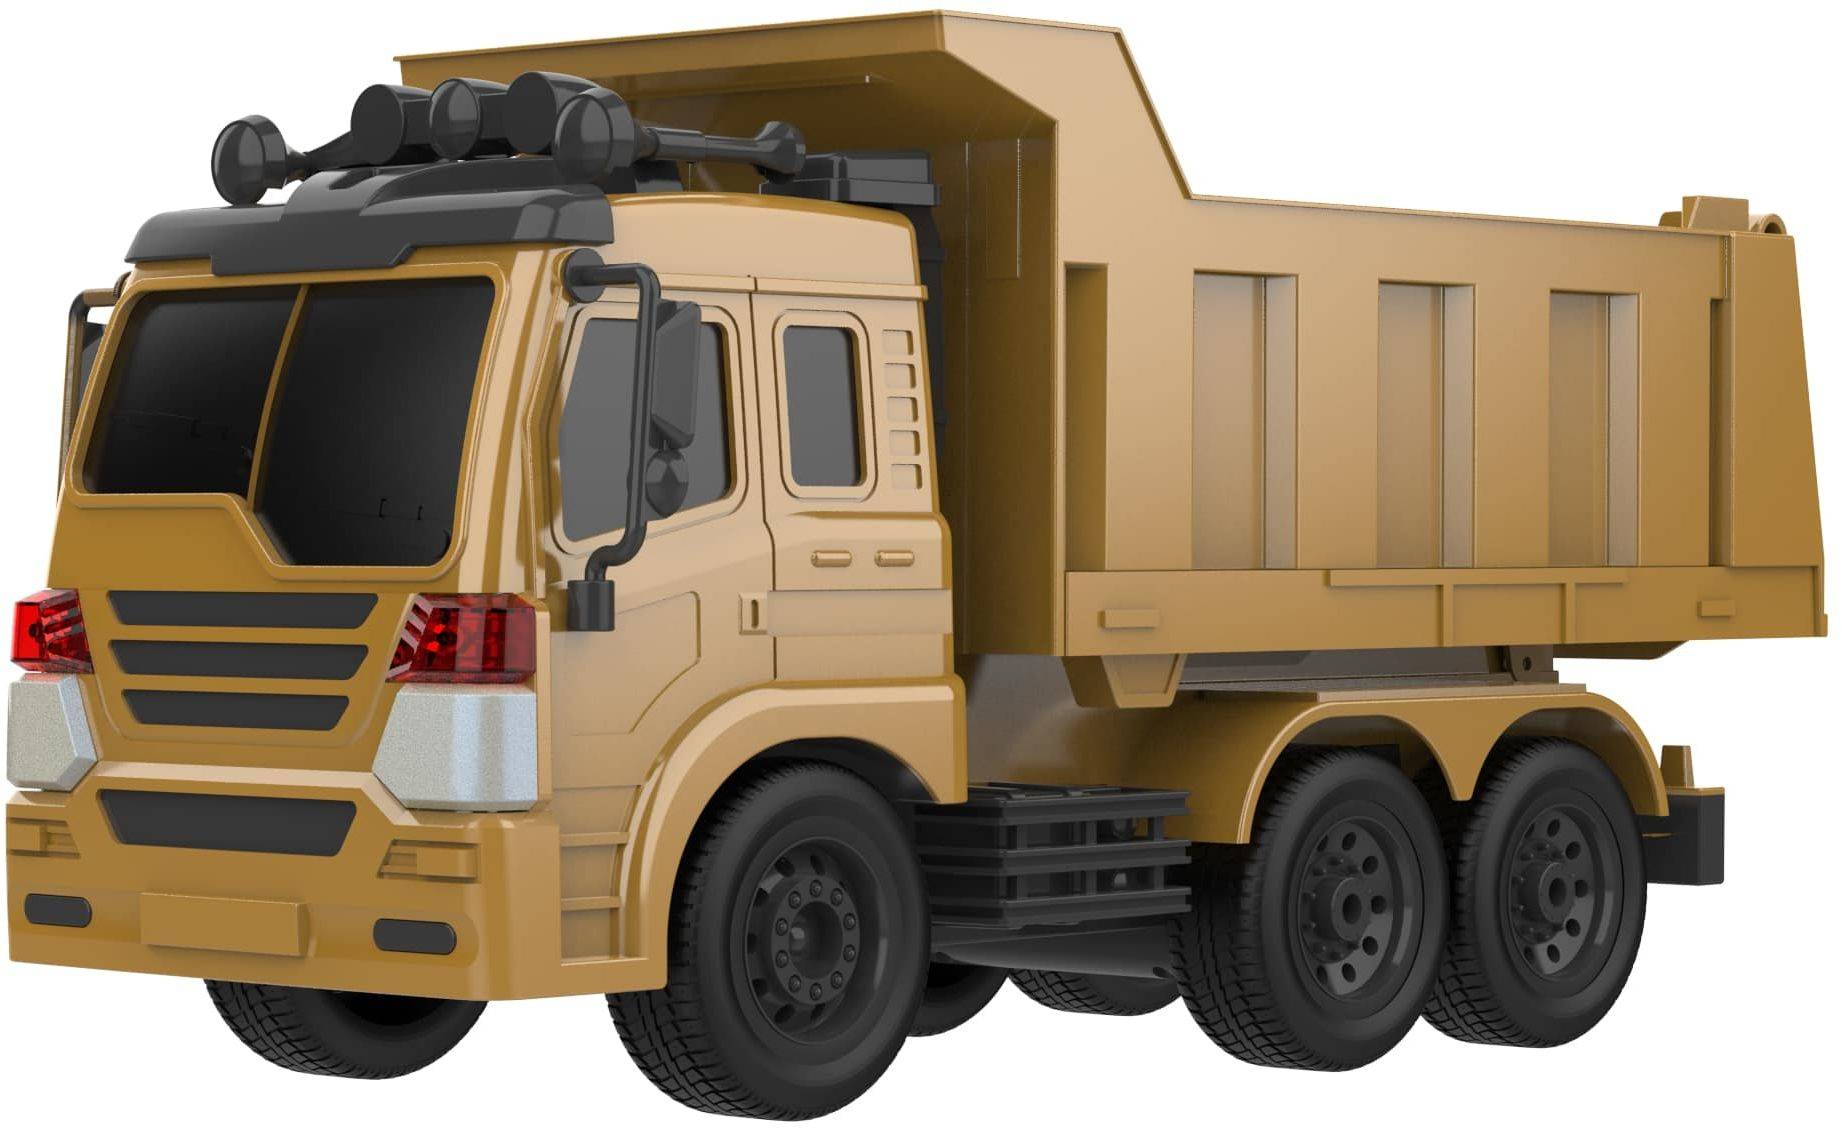 Машина радиоуправляемая Hiper Truck car желтый/черный (hct-0023)